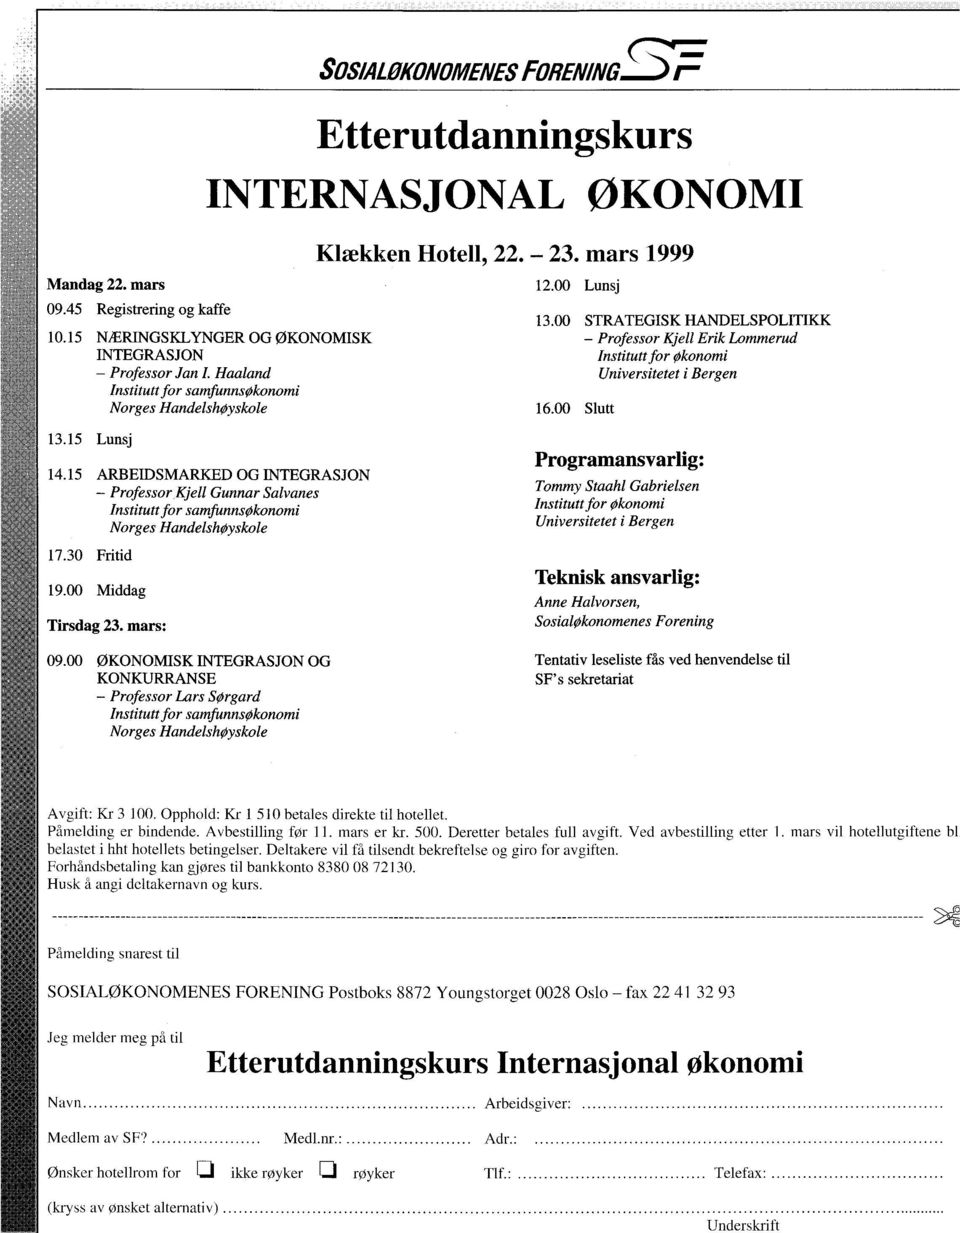 00 STRATEGISK HANDELSPOLITIKK Professor Kjell Erik Lommerud Institutt for Økonomi Universitetet i Bergen 16.00 Slutt 13.15 Lunsj 14.